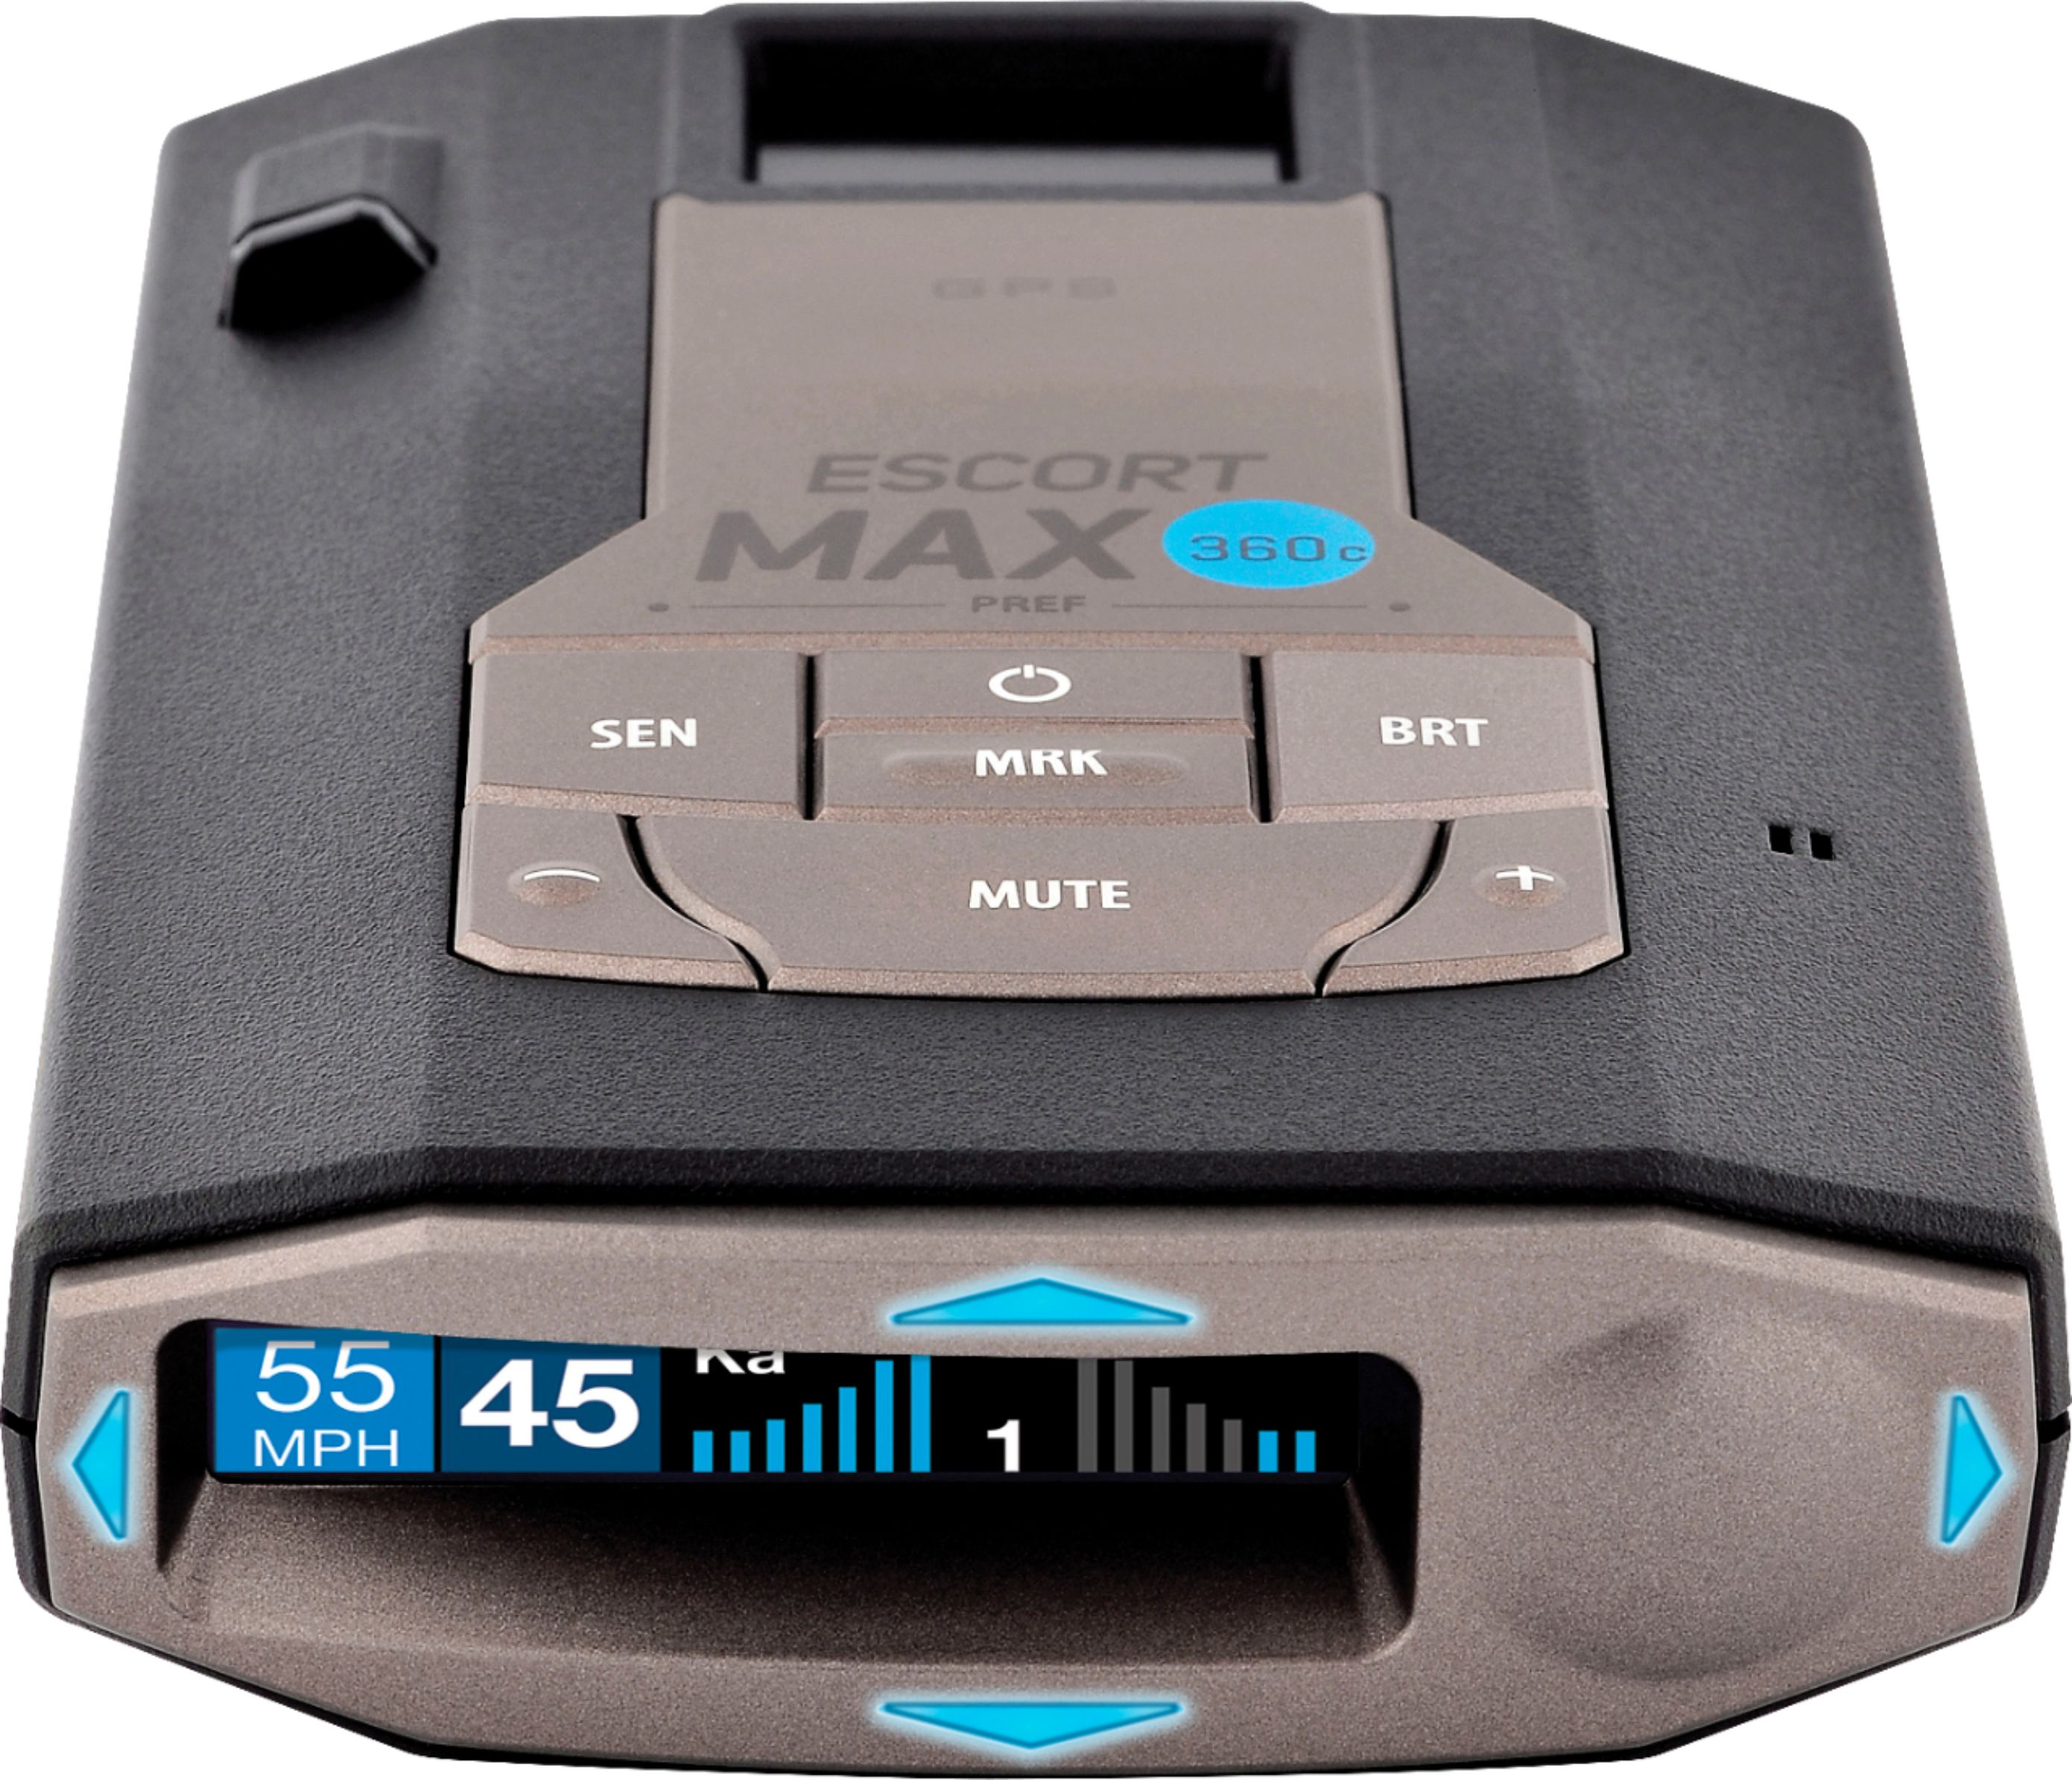 ESCORT Radar Mini USB Cable - EscortRadar